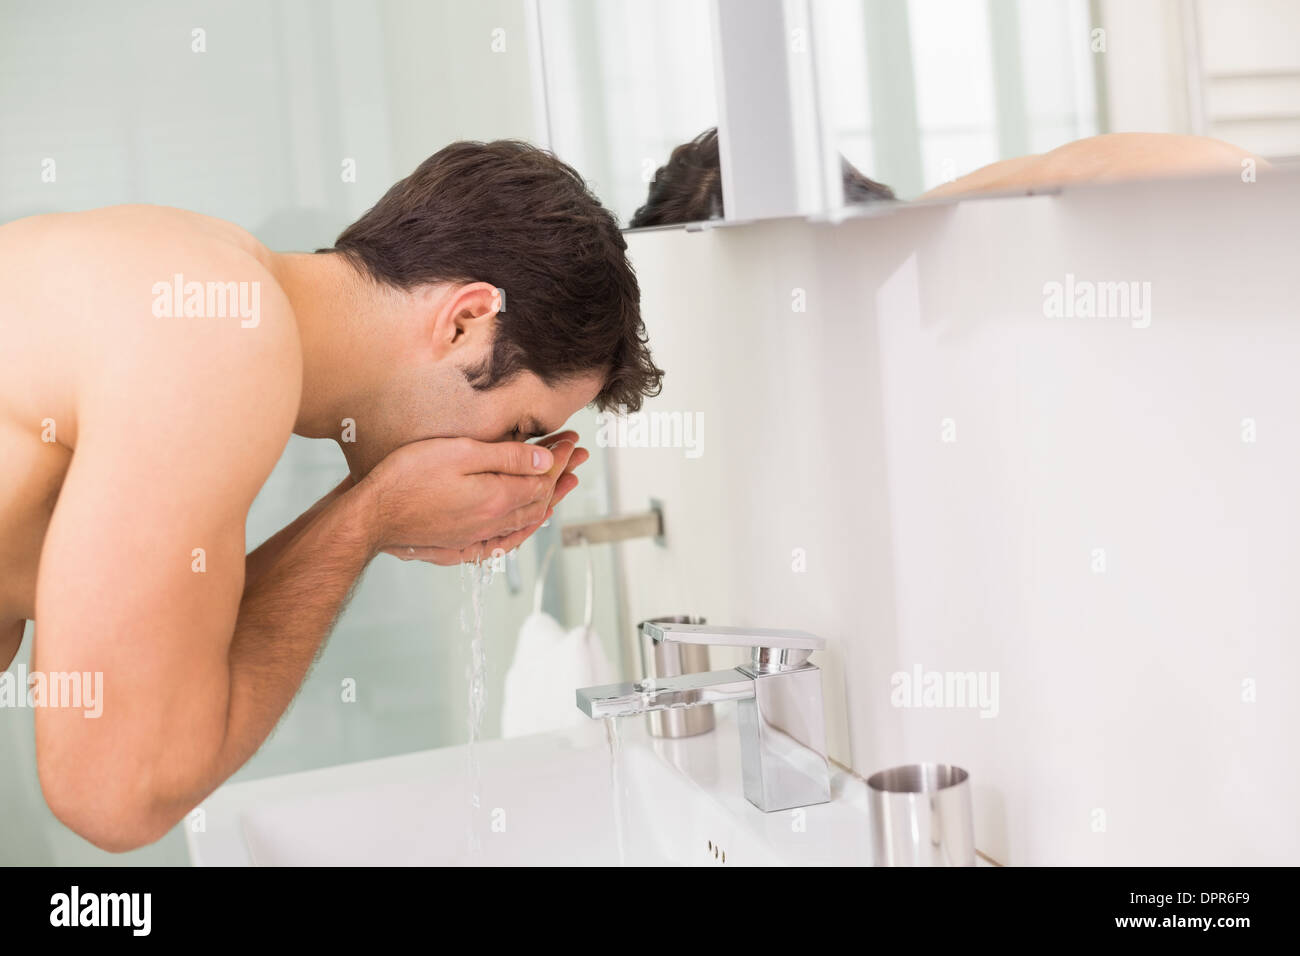 Резкий воздух омыл лицо. Мужчина умывается фото. Мужчина умывается в ванной. Мужчина бреется в ванной. Врач умывается в шапочке фото и видео.